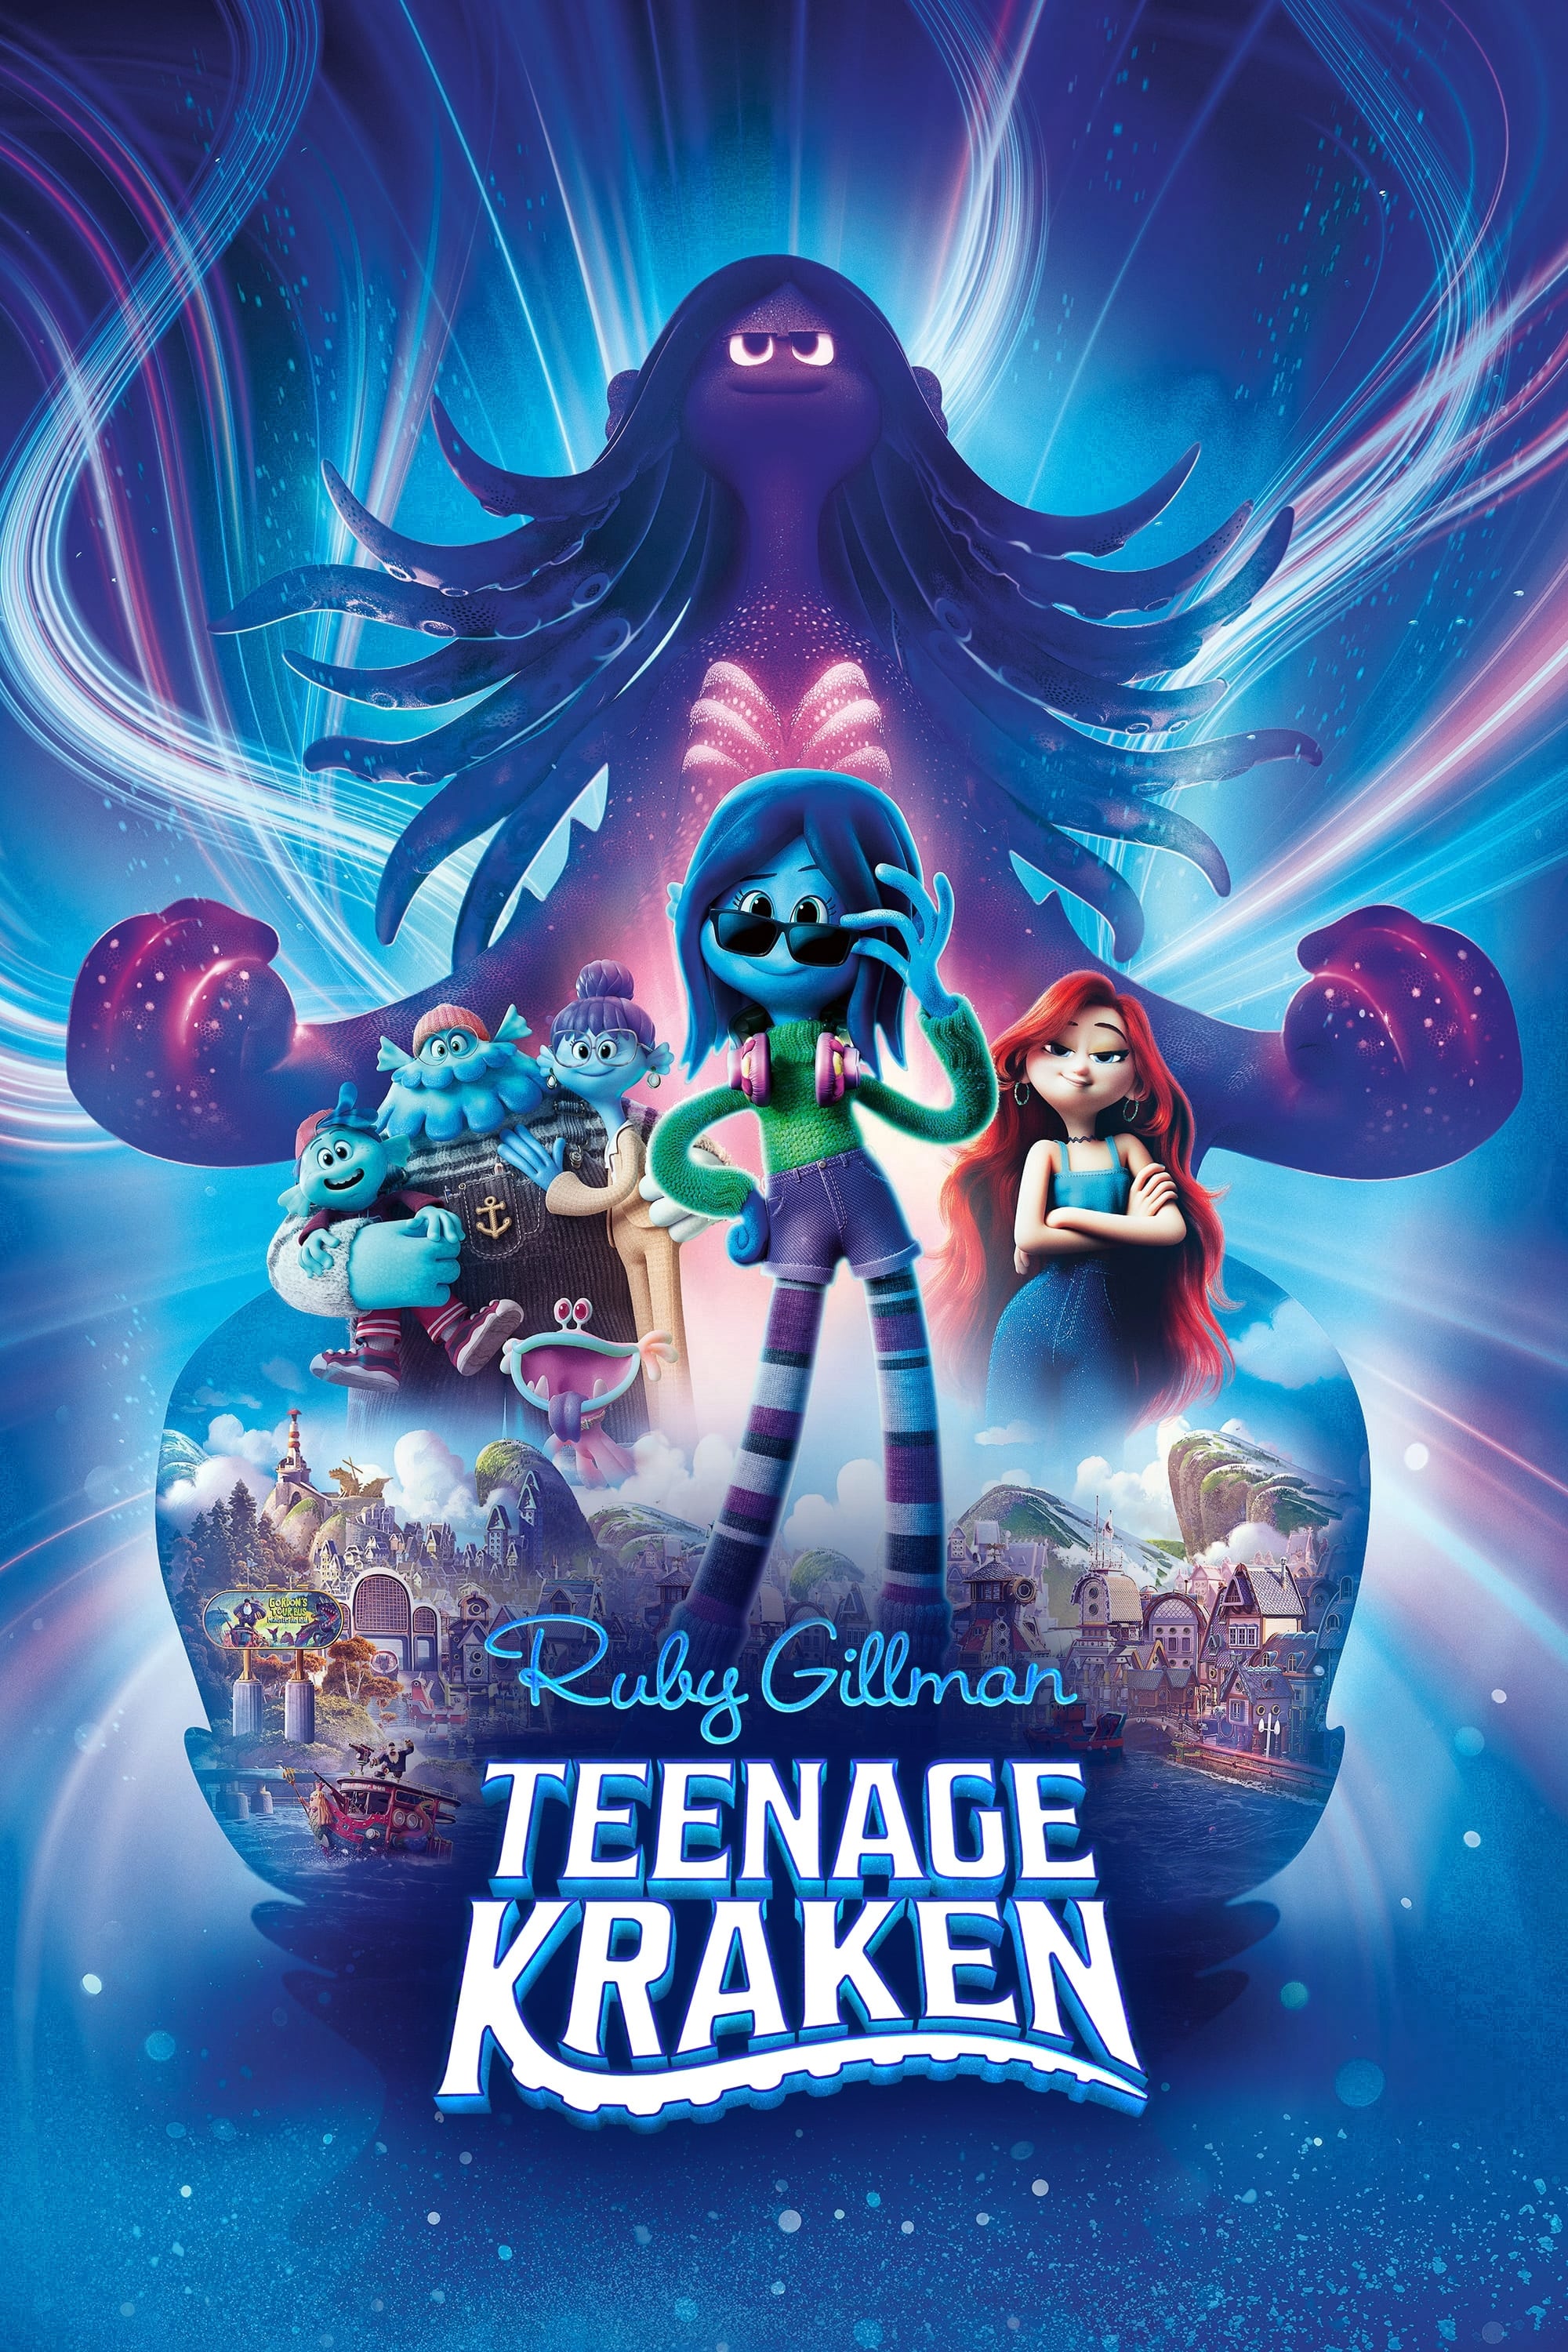 Ruby: Aventuras de una kraken adolescente